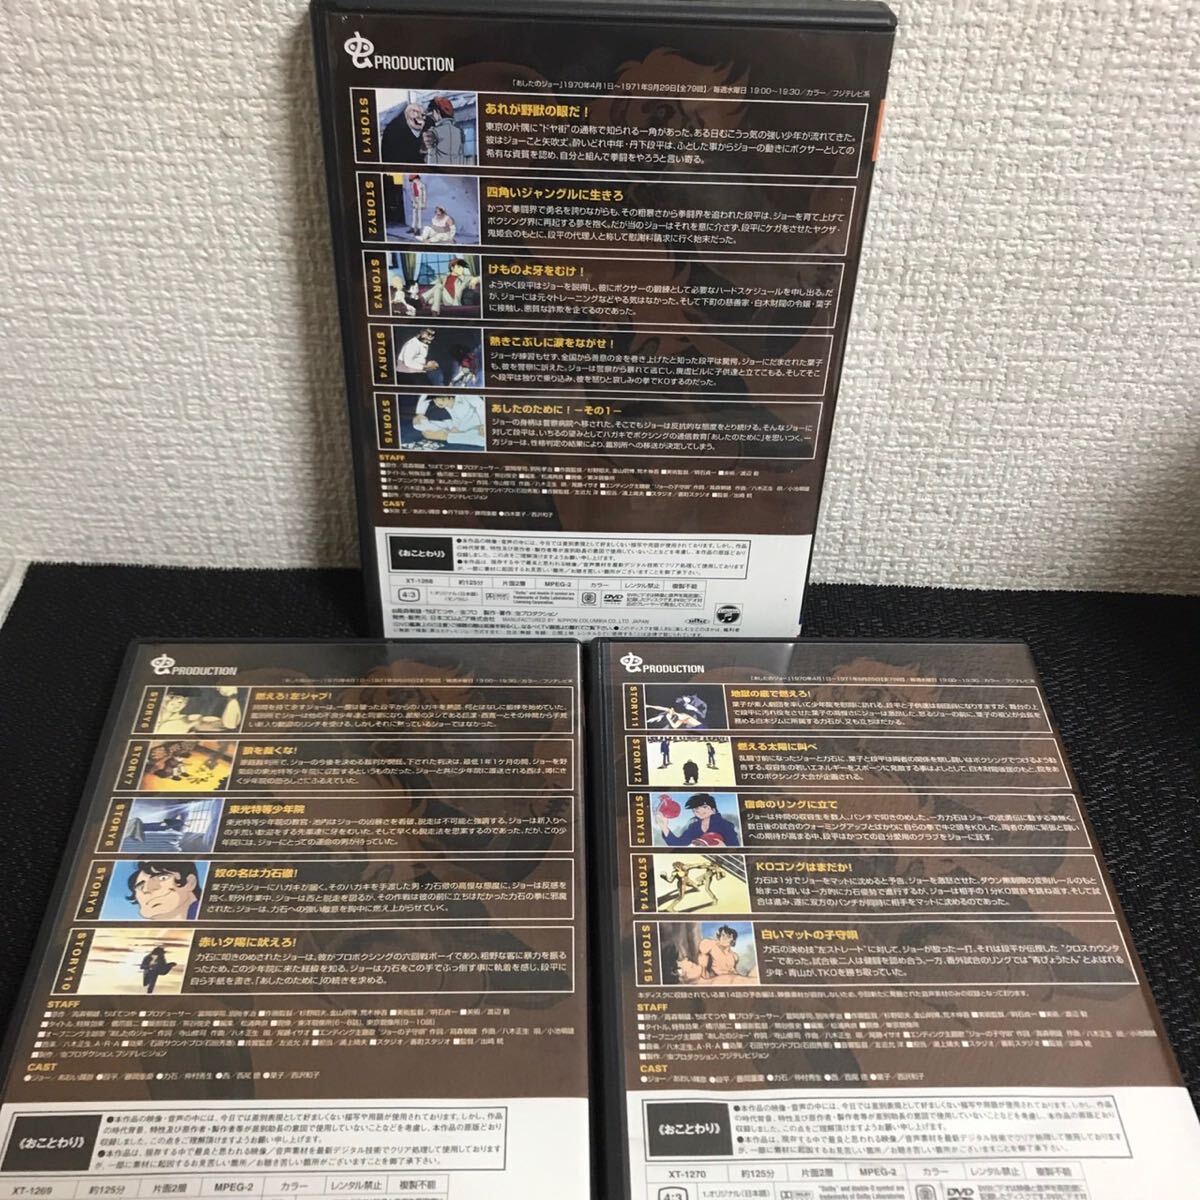  Ashita no Joe DVD-BOX1 5 листов комплект / cell версия / аниме / обычная цена 23,500 иен / вода влажный есть. утиль 